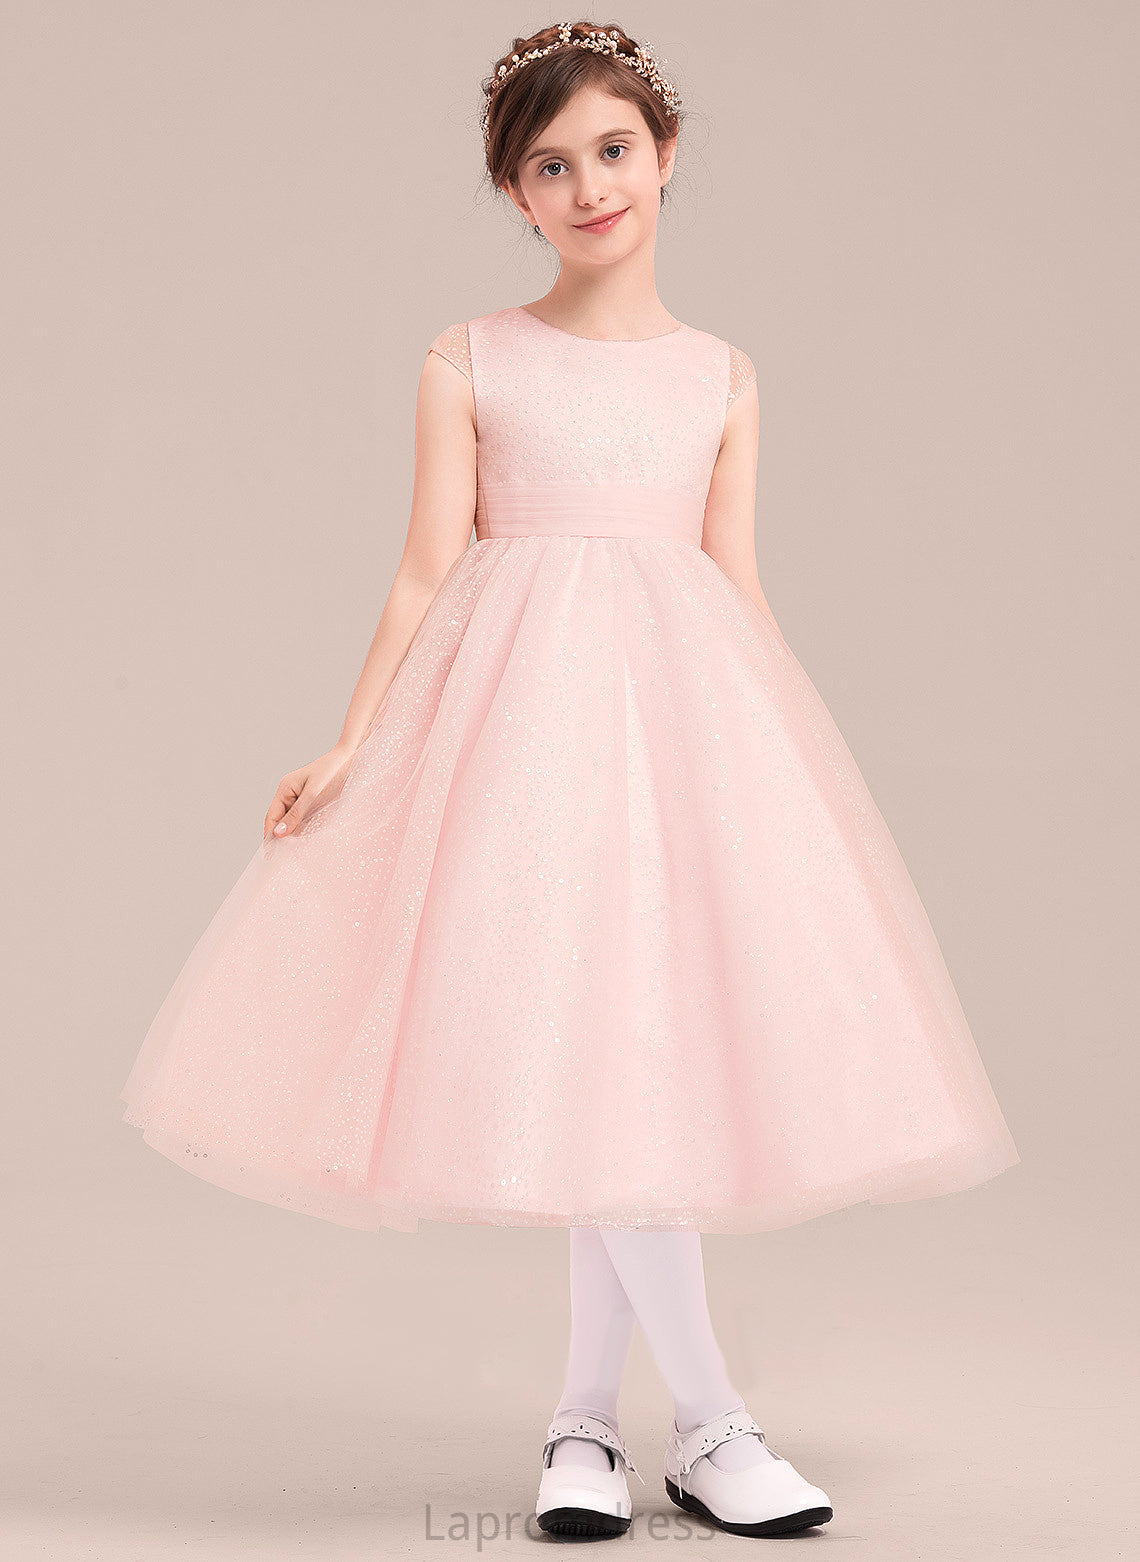 With A-Line/Princess Scoop Tea-length Dress Mila Bow(s) Tulle Sleeveless - Neck Girl Flower Girl Dresses Flower